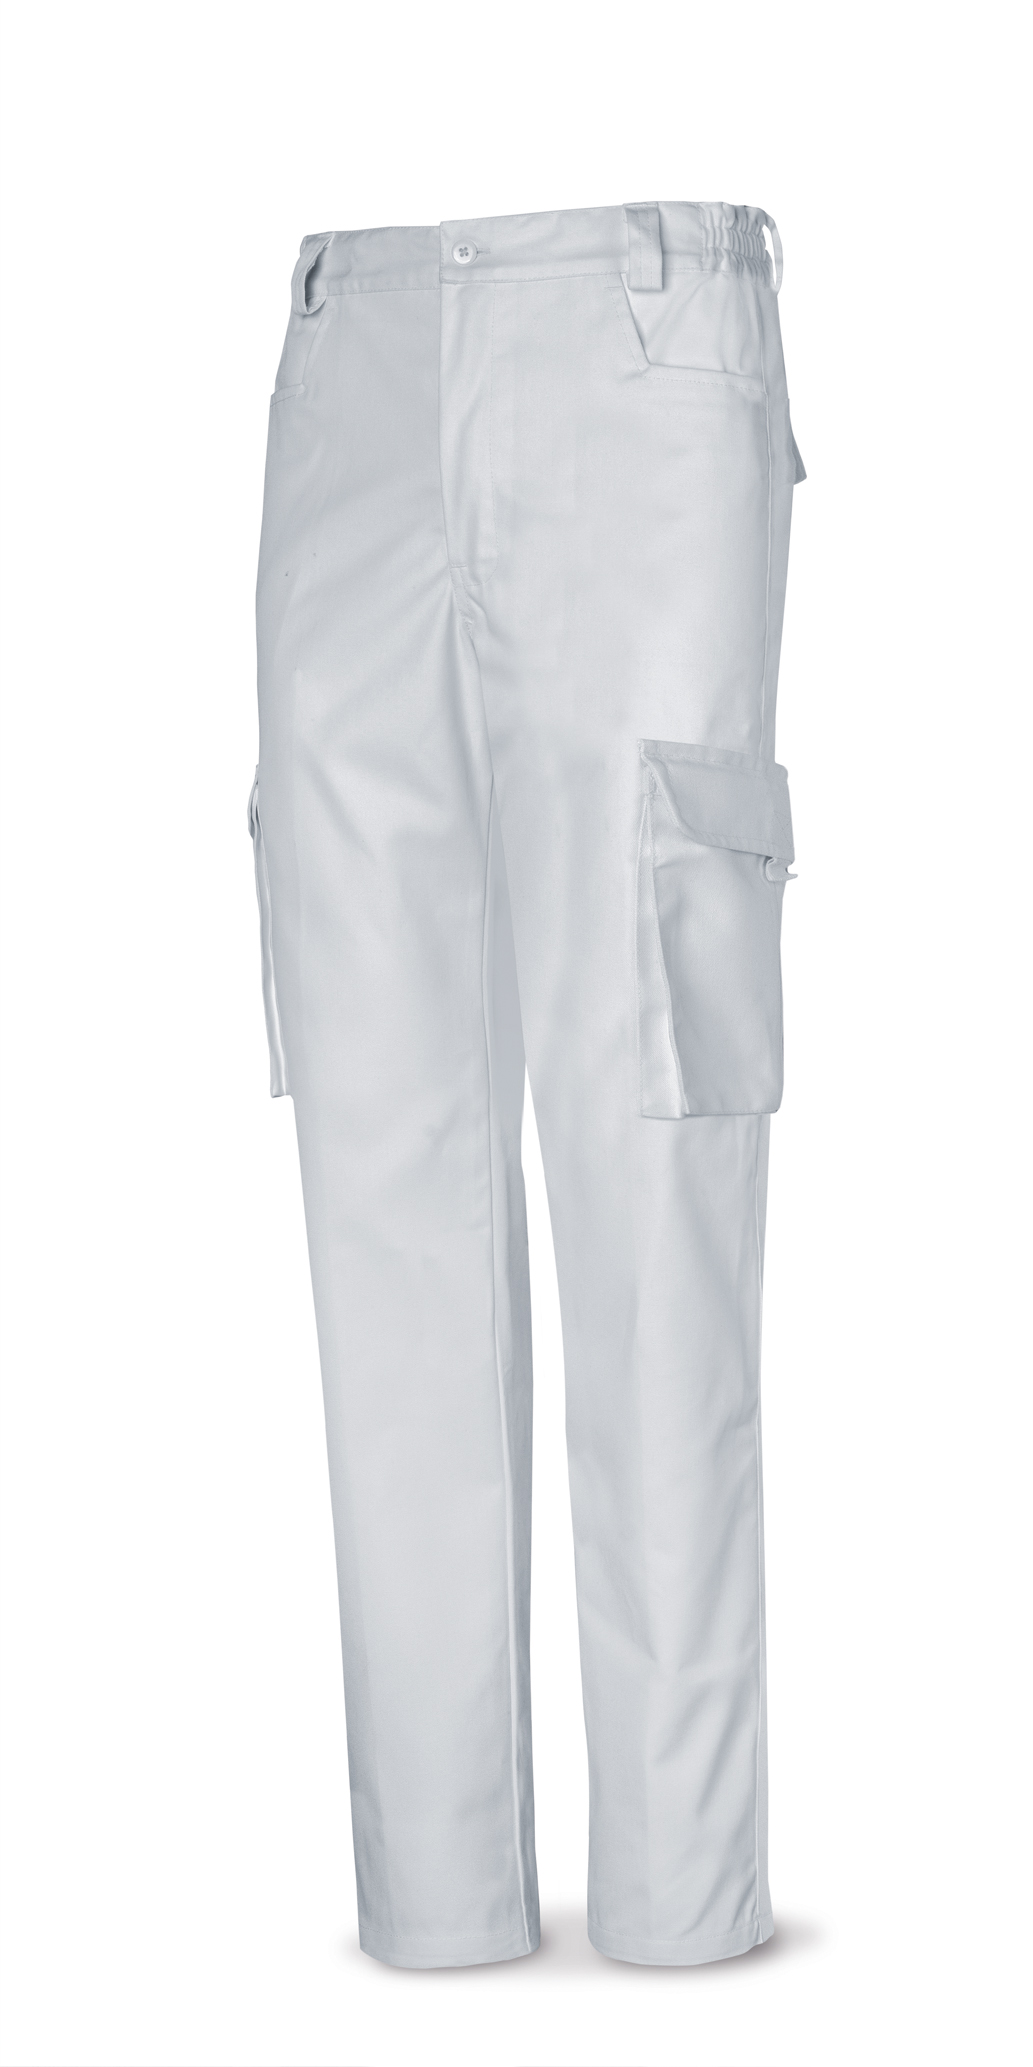 488-PB Top Vestuario Laboral Serie Top Pantalón blanco tergal de 245 g. 